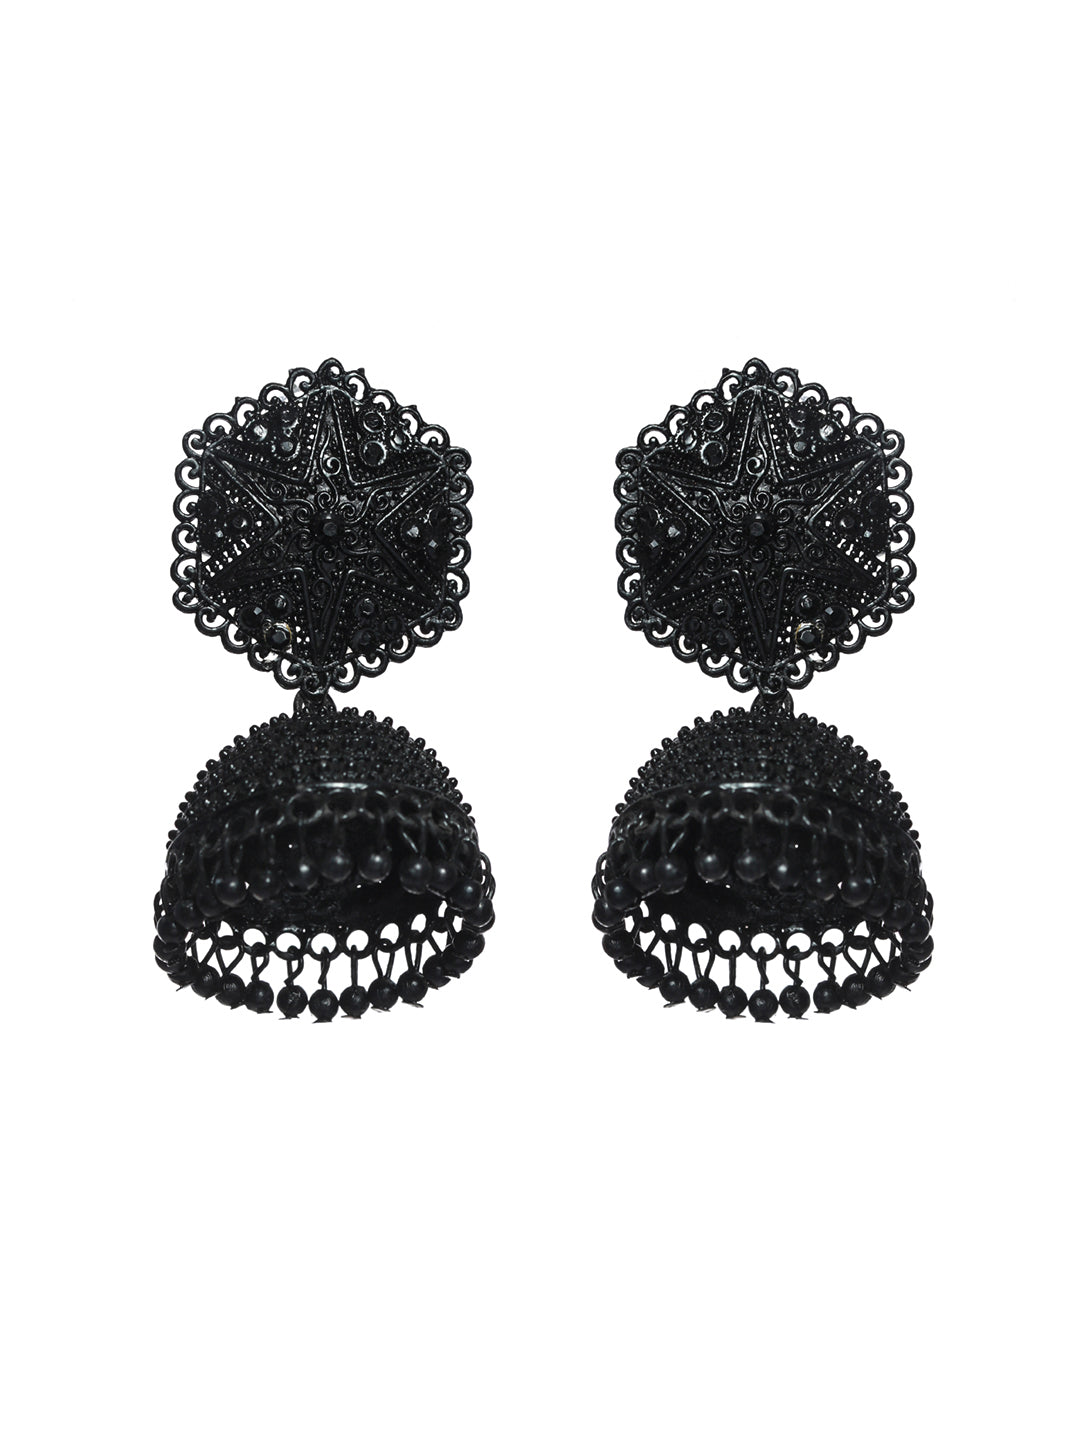 Priyaasi Black Floral Jhumka Earrings